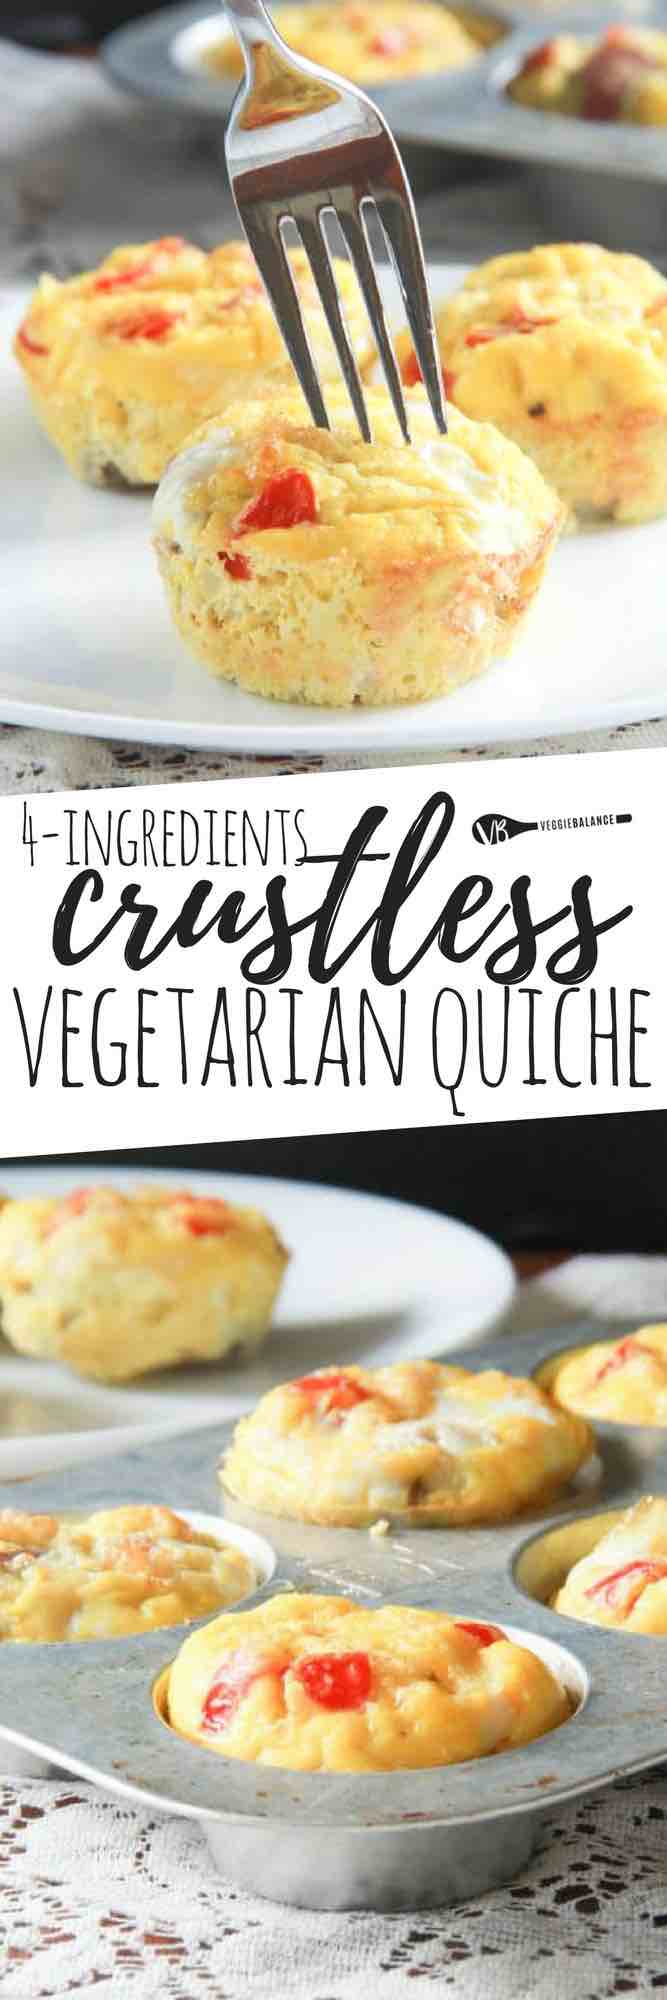 Mini Crustless Vegetarian Quiche Muffins Recipe (Gluten-Free Quiche)